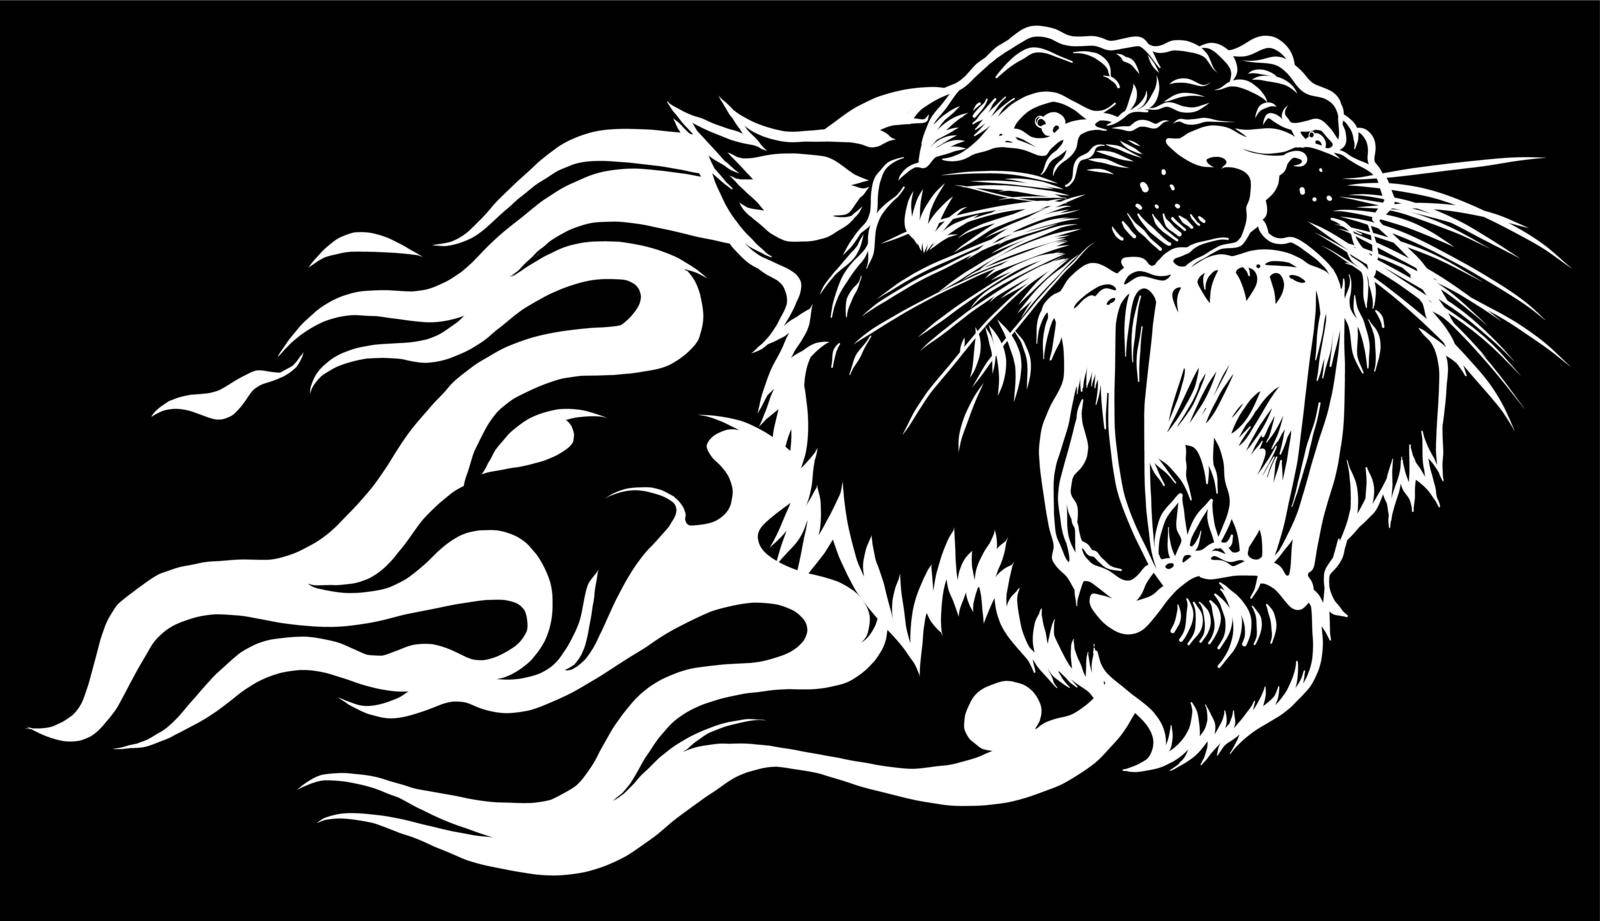 Jaguar or cougar predator head flame in black background. Vector illustration. by dean